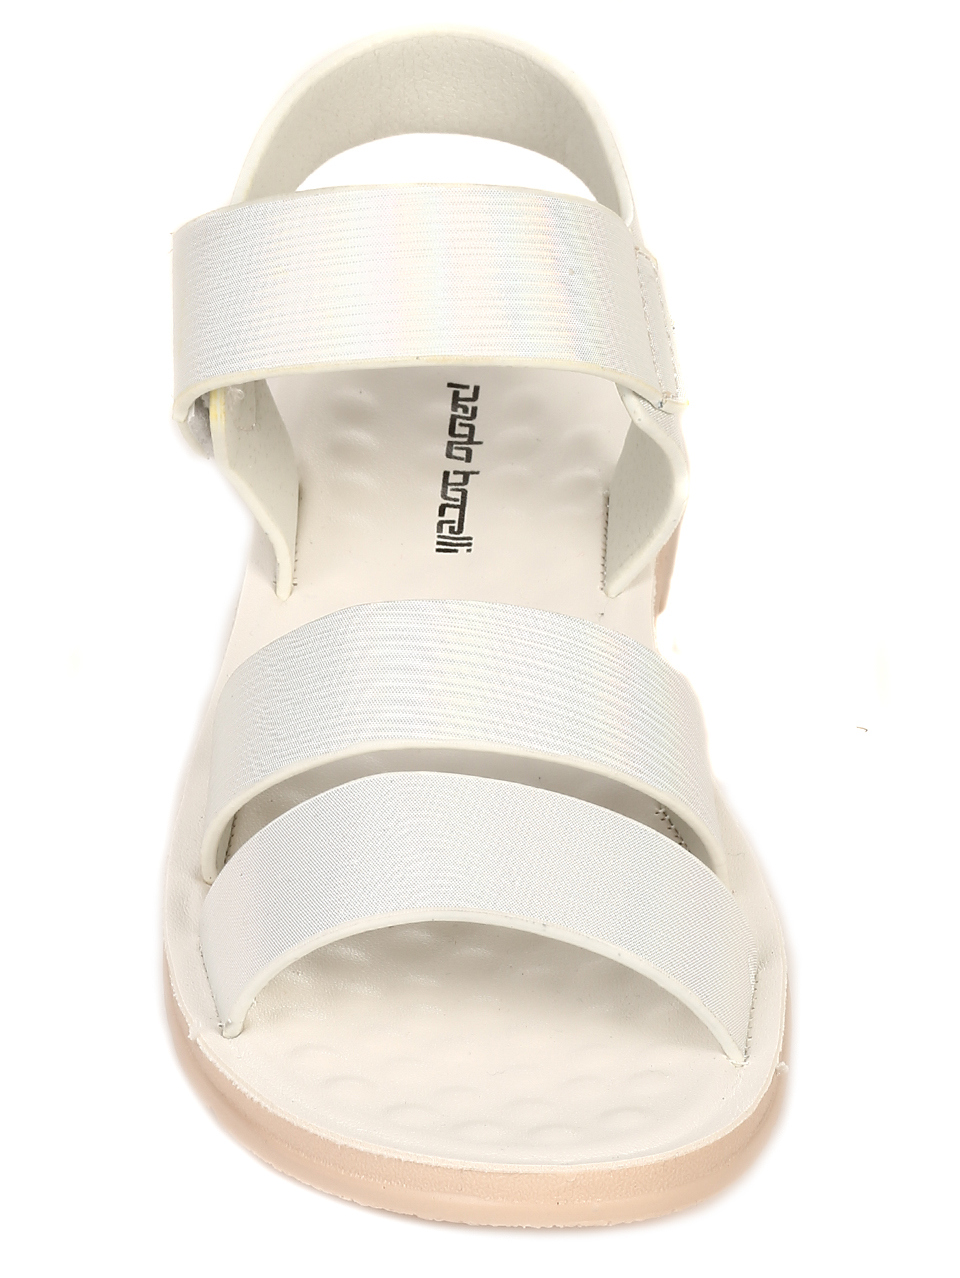 Ежедневни дамски равни сандали в бяло 4D-21188 white